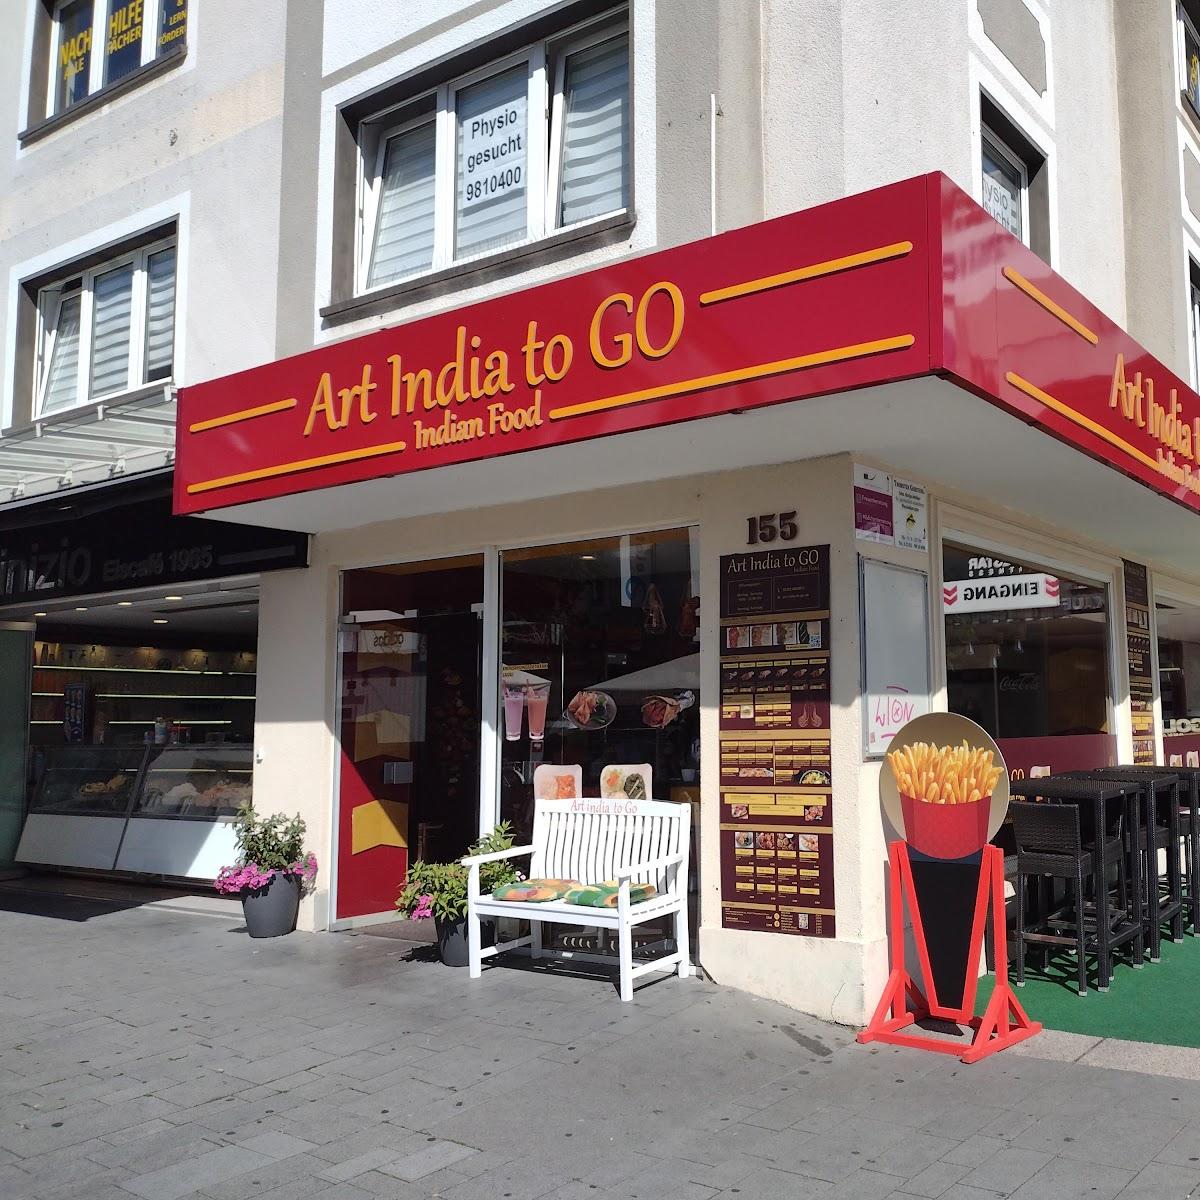 Restaurant "Art India To Go" in Bergisch Gladbach